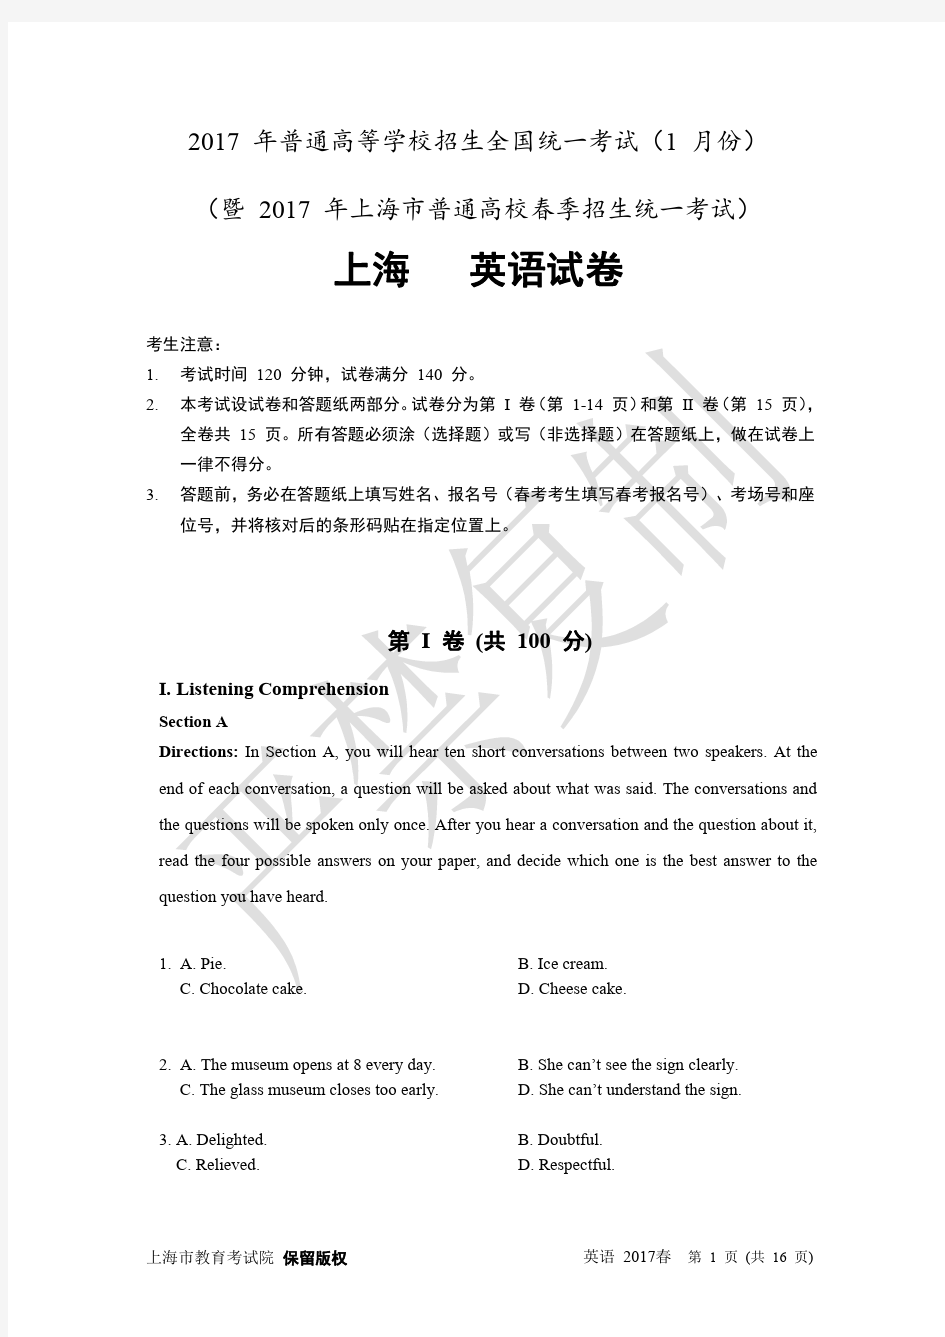 2017年1月上海英语高考(春考)试卷重制版